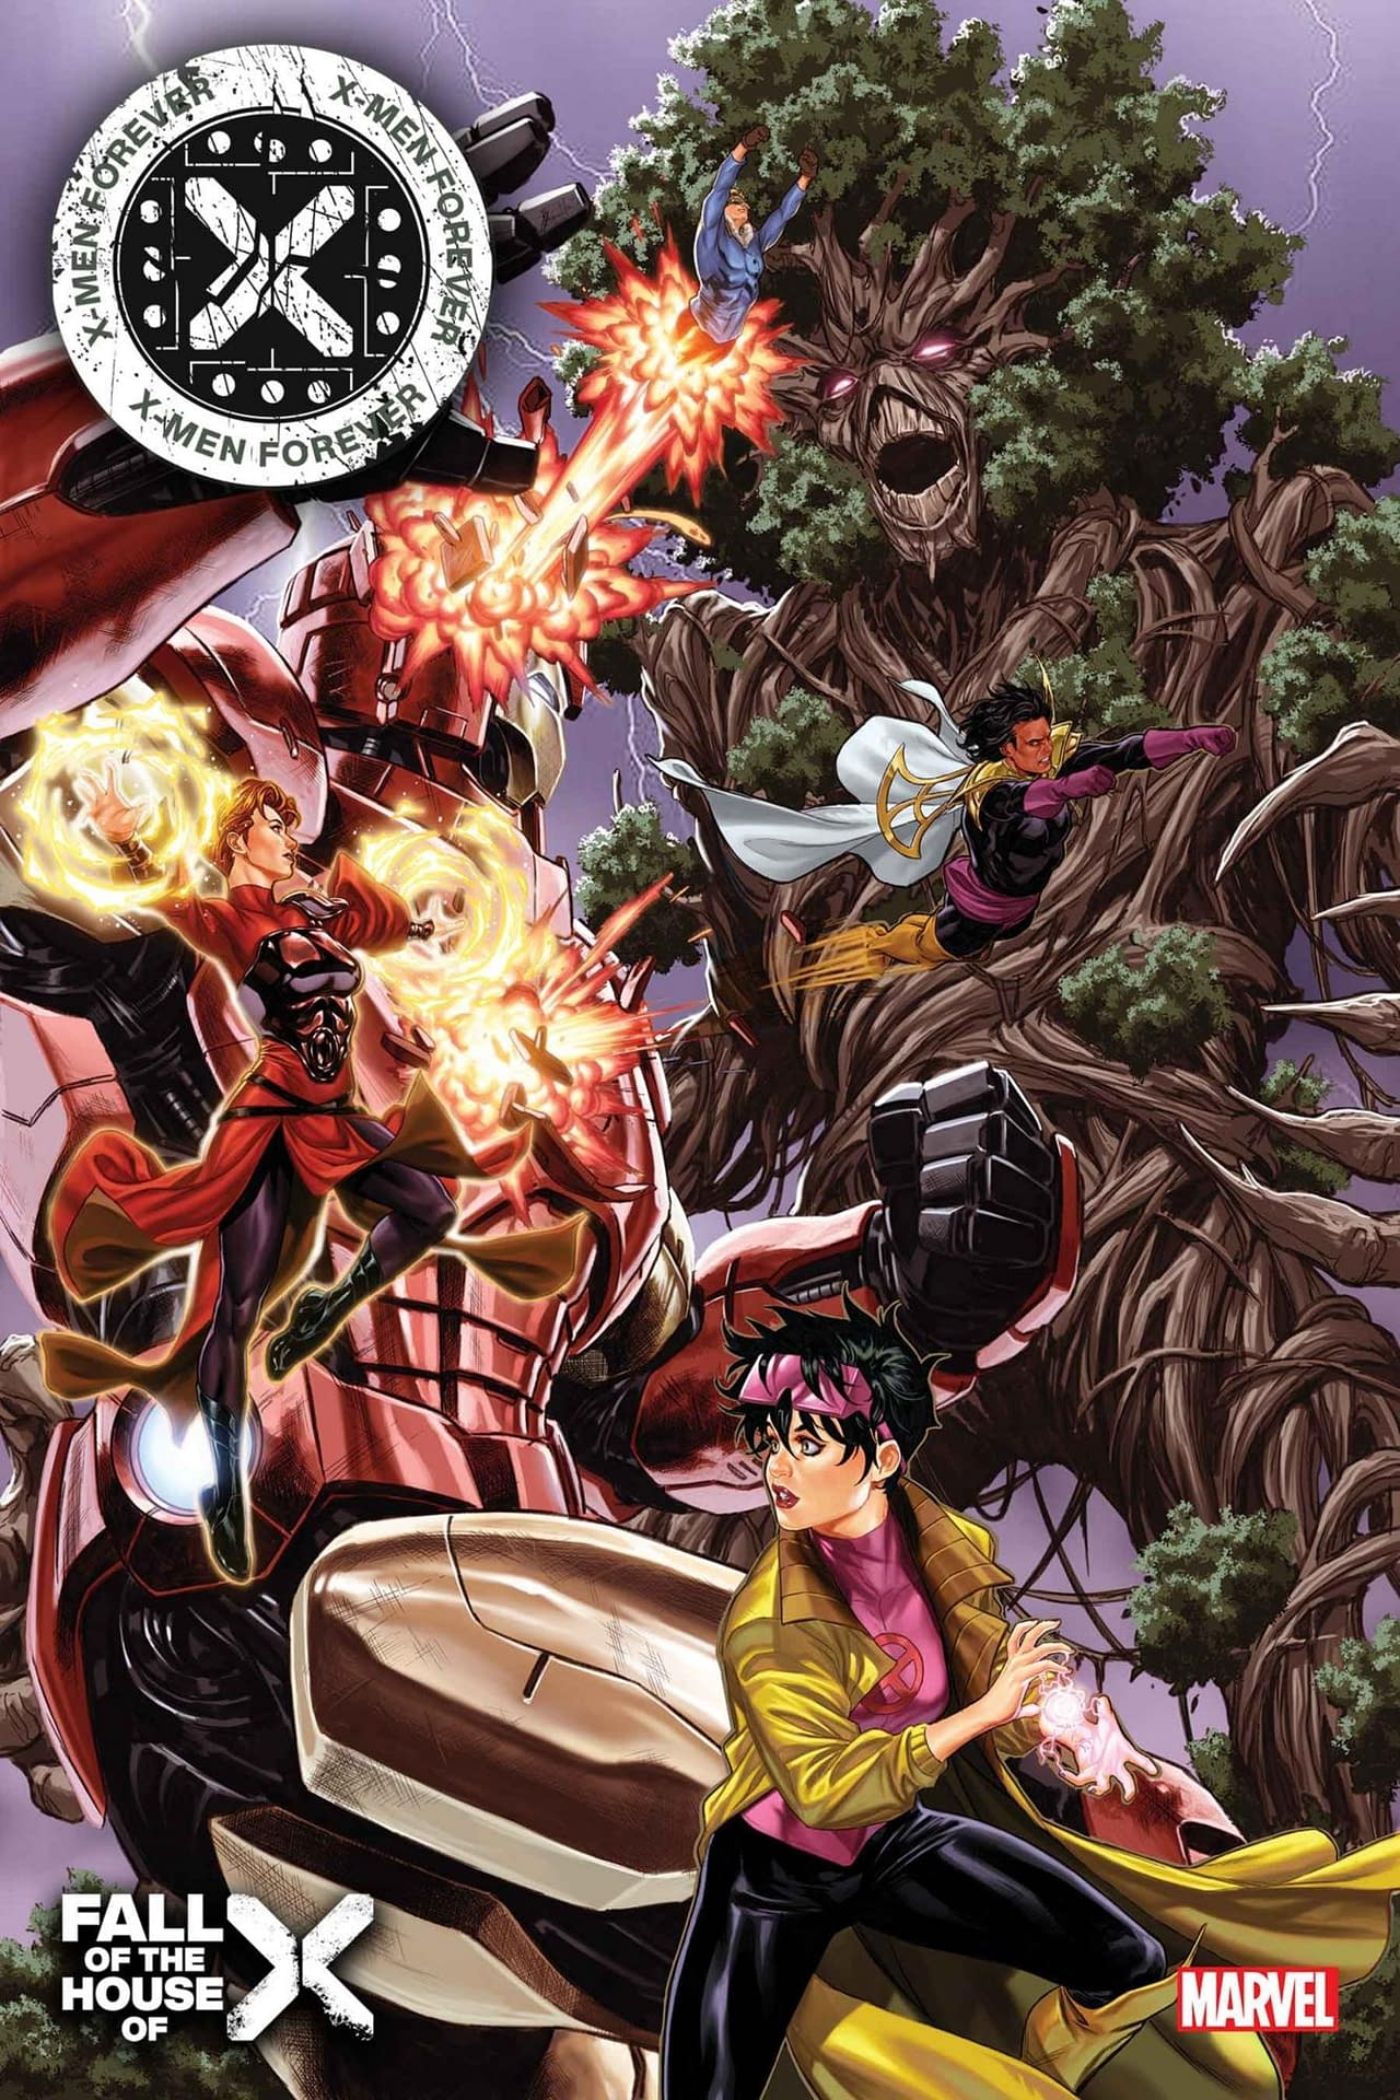 Capa de X-Men Forever #2 apresentando mutantes lutando em Krakoa.